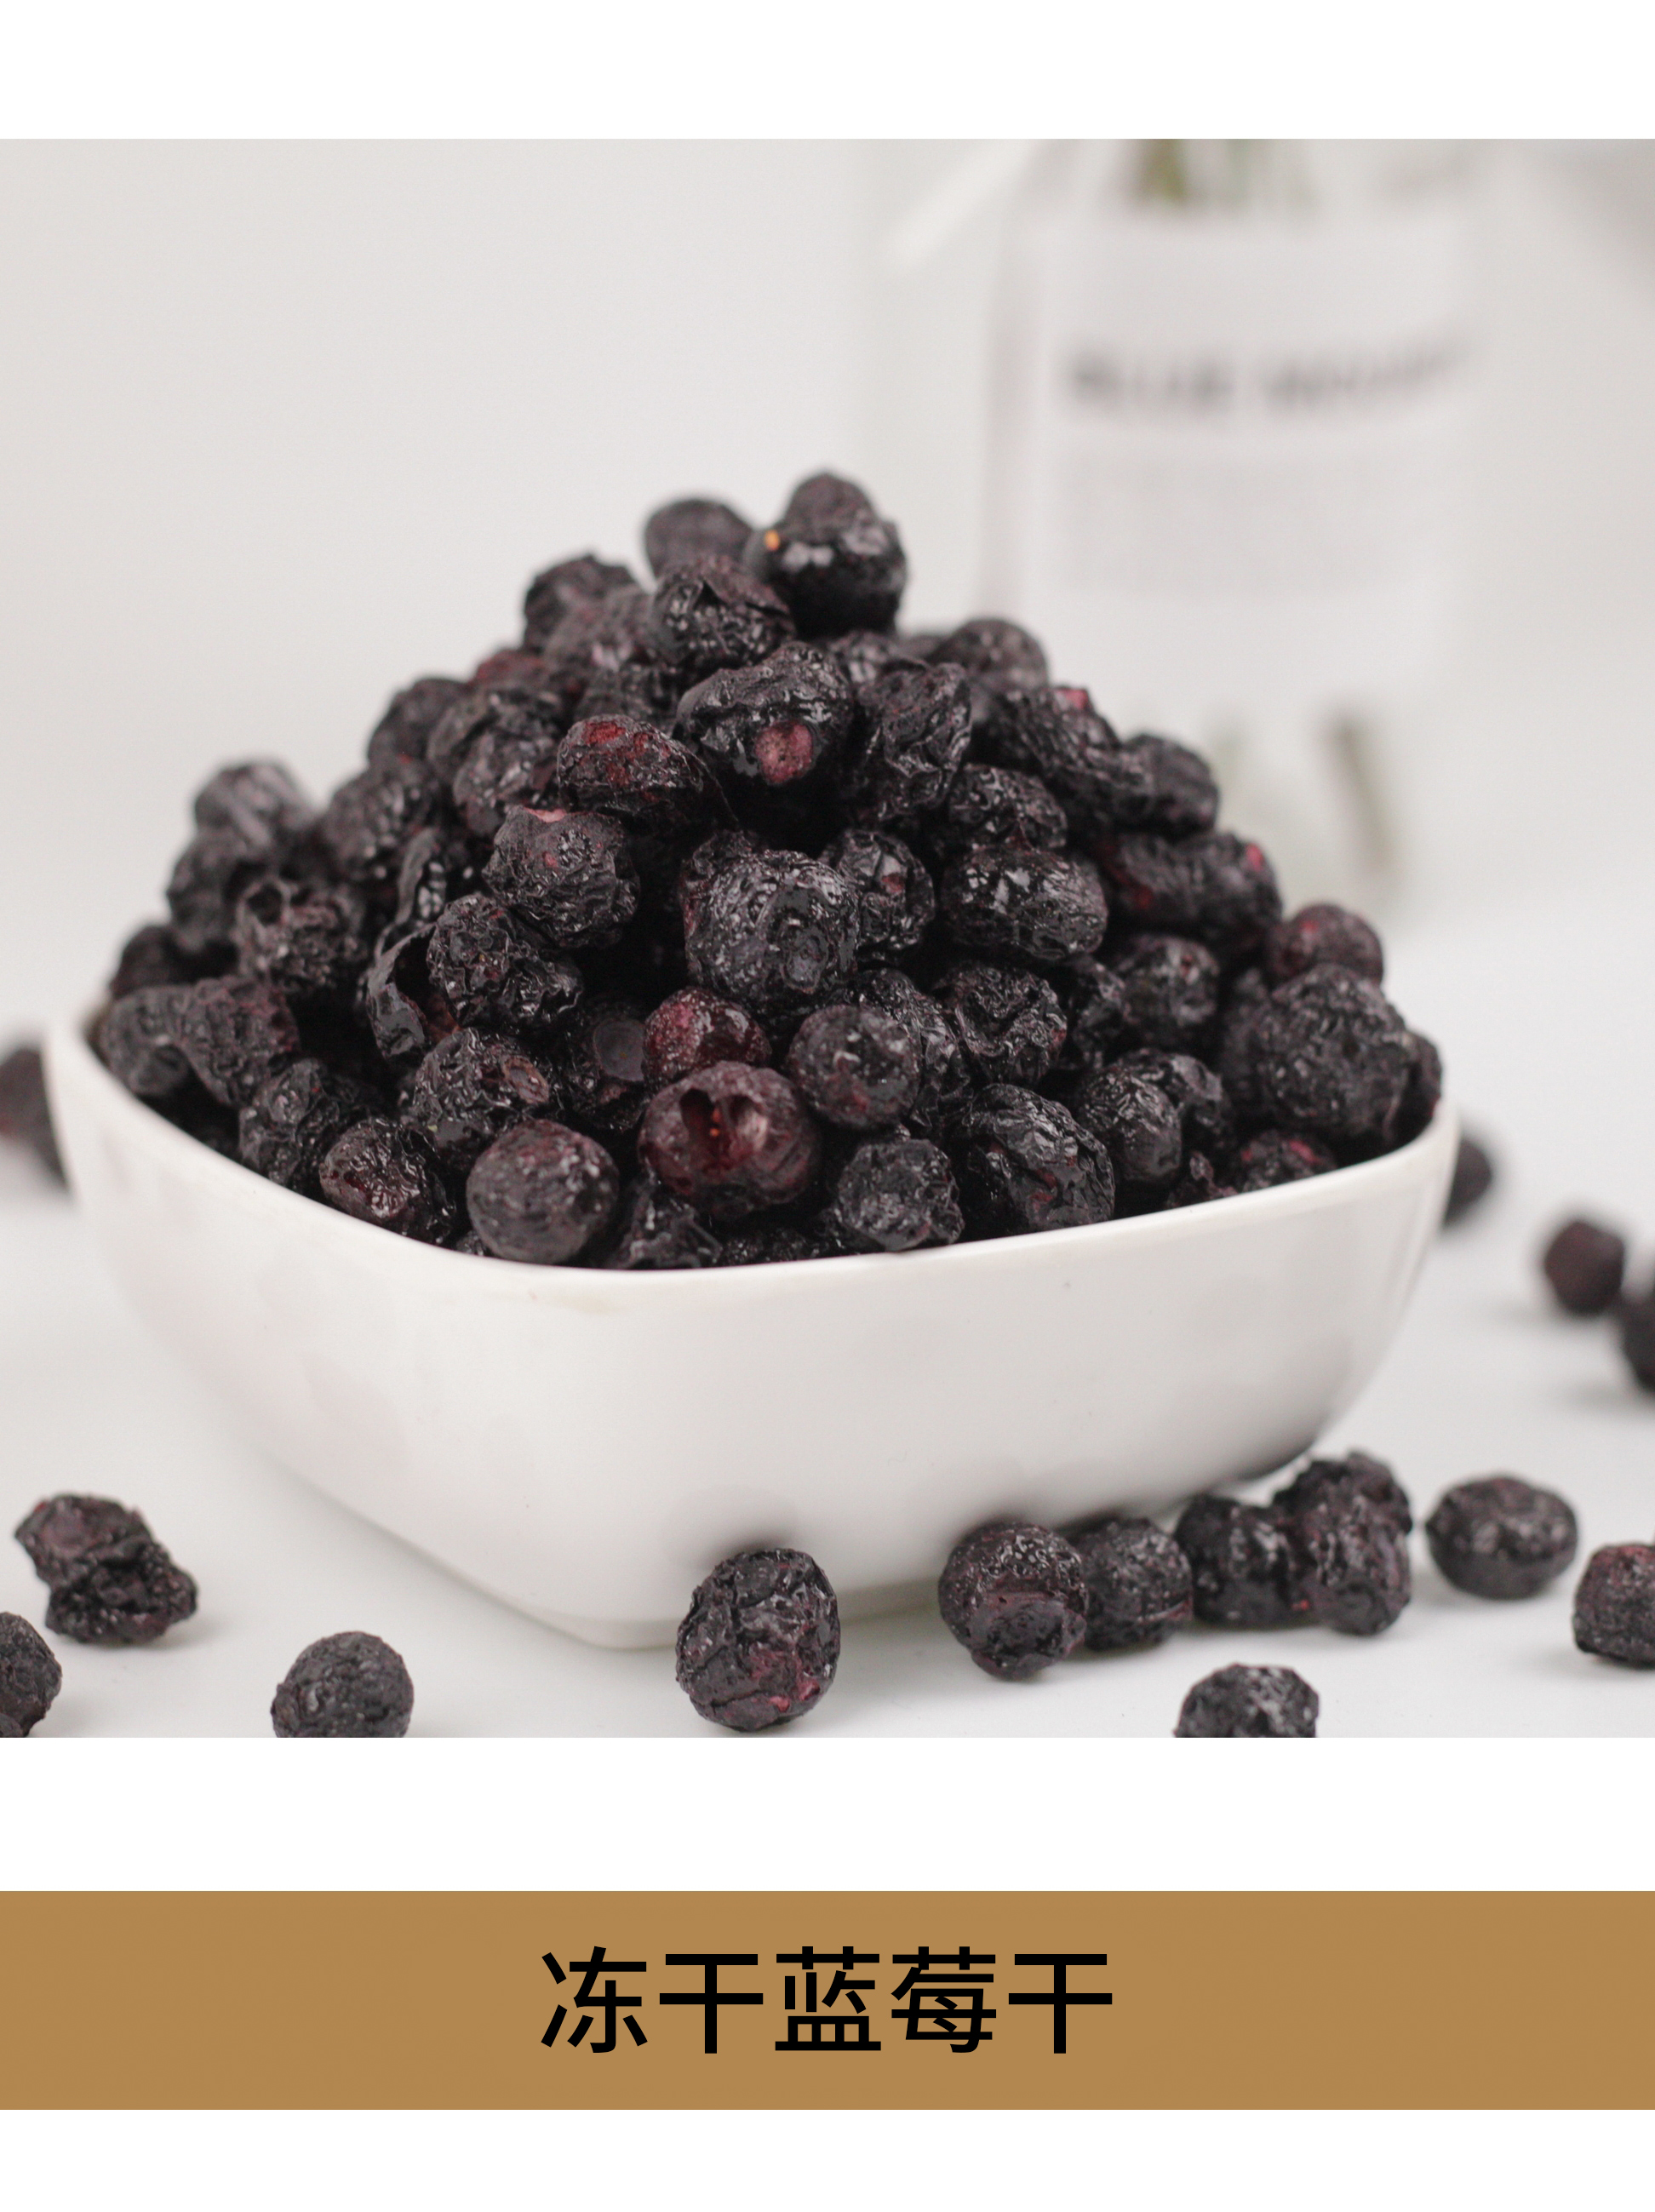 冻干蓝莓干丁碎粒烘焙原料冻干水果脆健康零食包邮冻干蓝莓粉